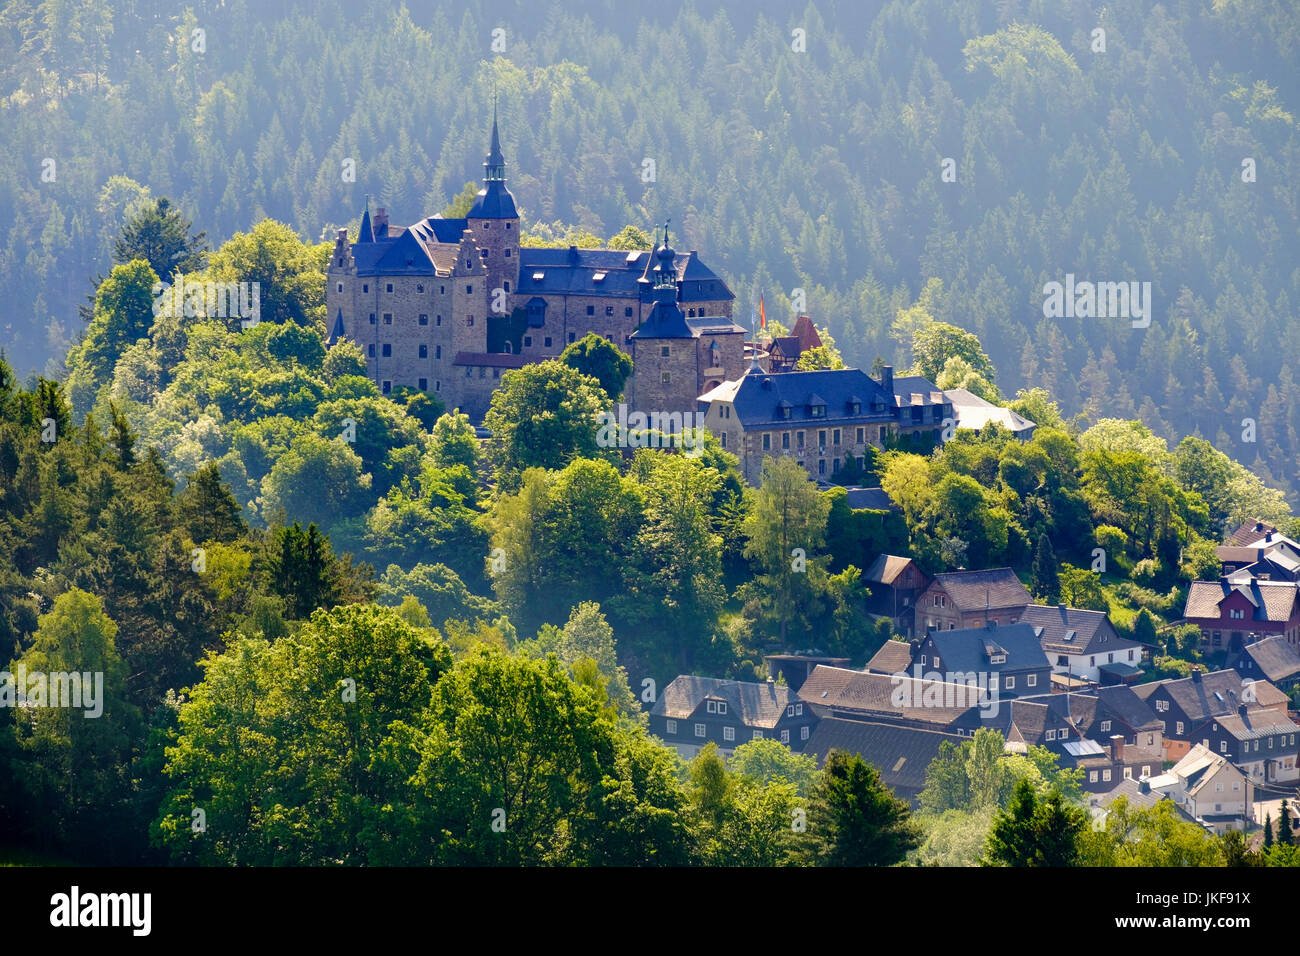 Burg Lauenstein, Dorf Lauenstein bei Ludwigsstadt, Frankenwald, Oberfranken, Franken, Bayern, Deutschland Foto Stock